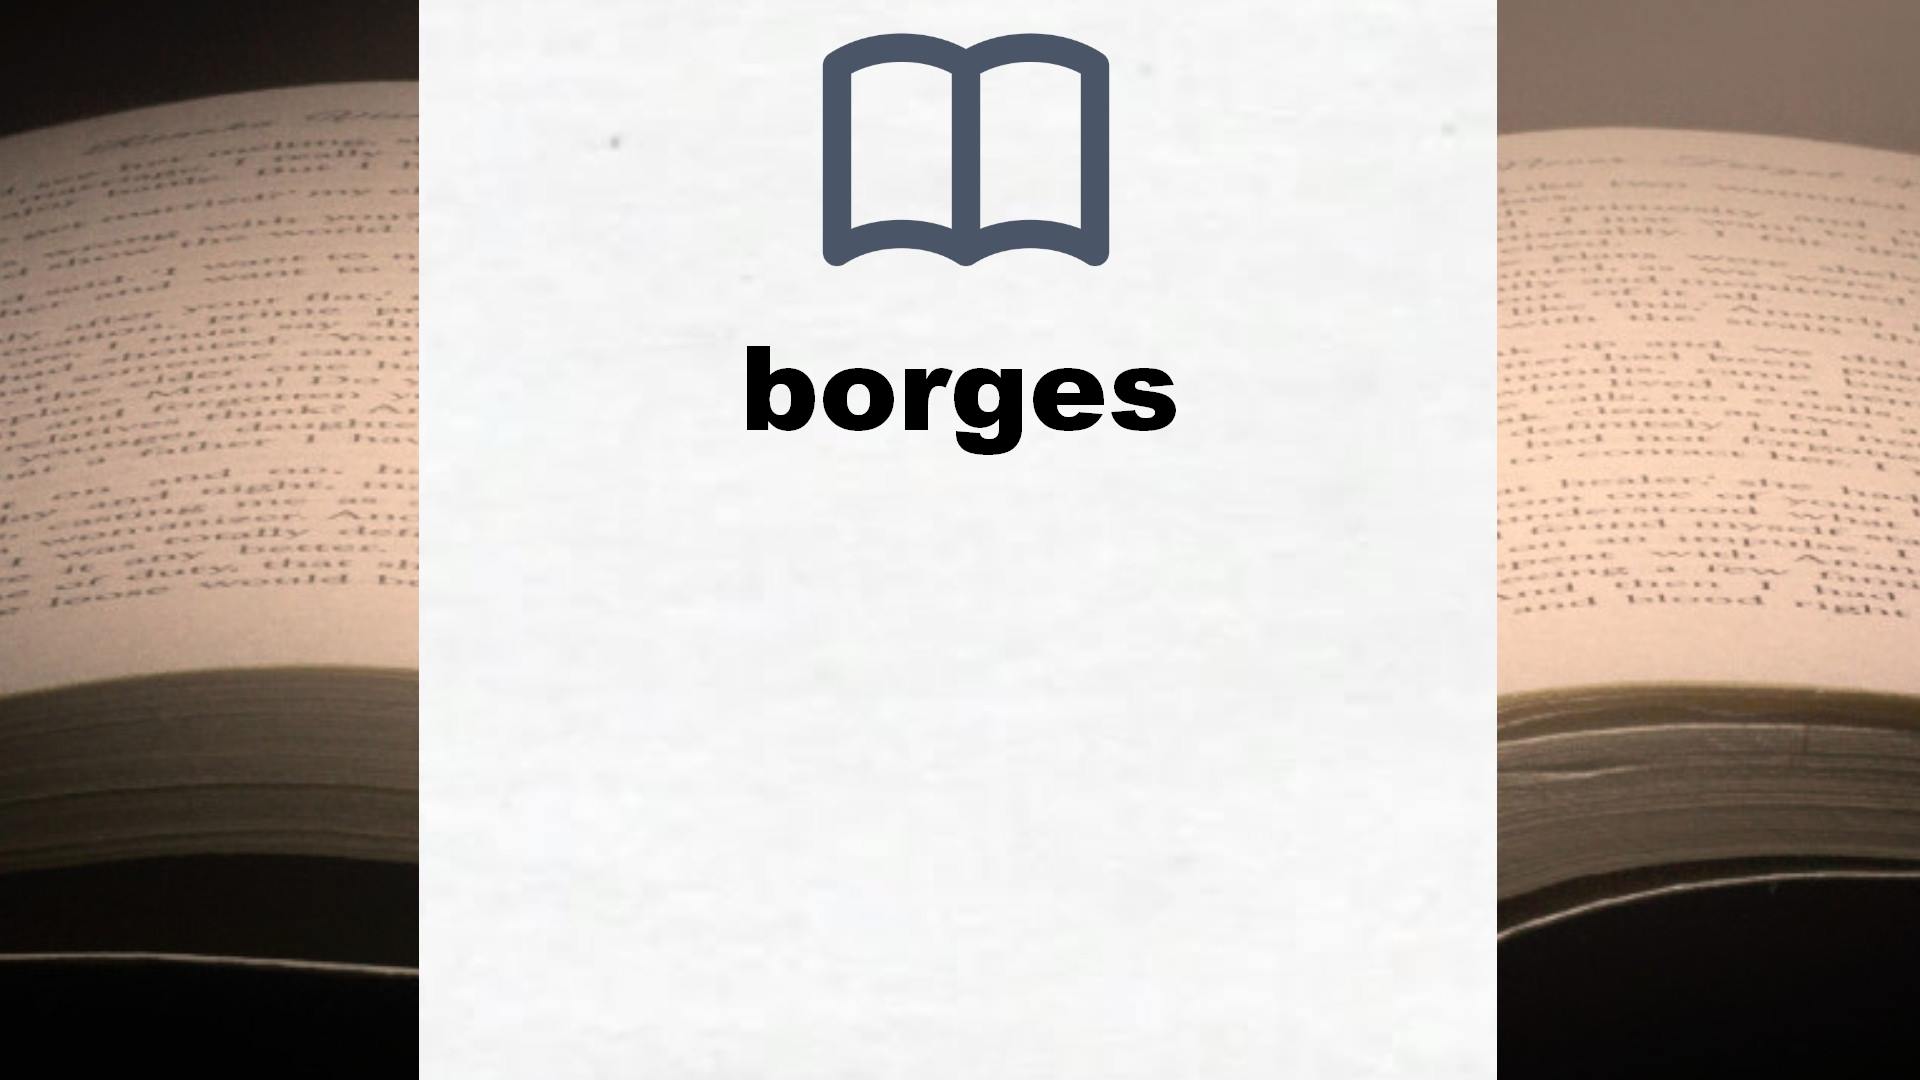 Libros sobre borges